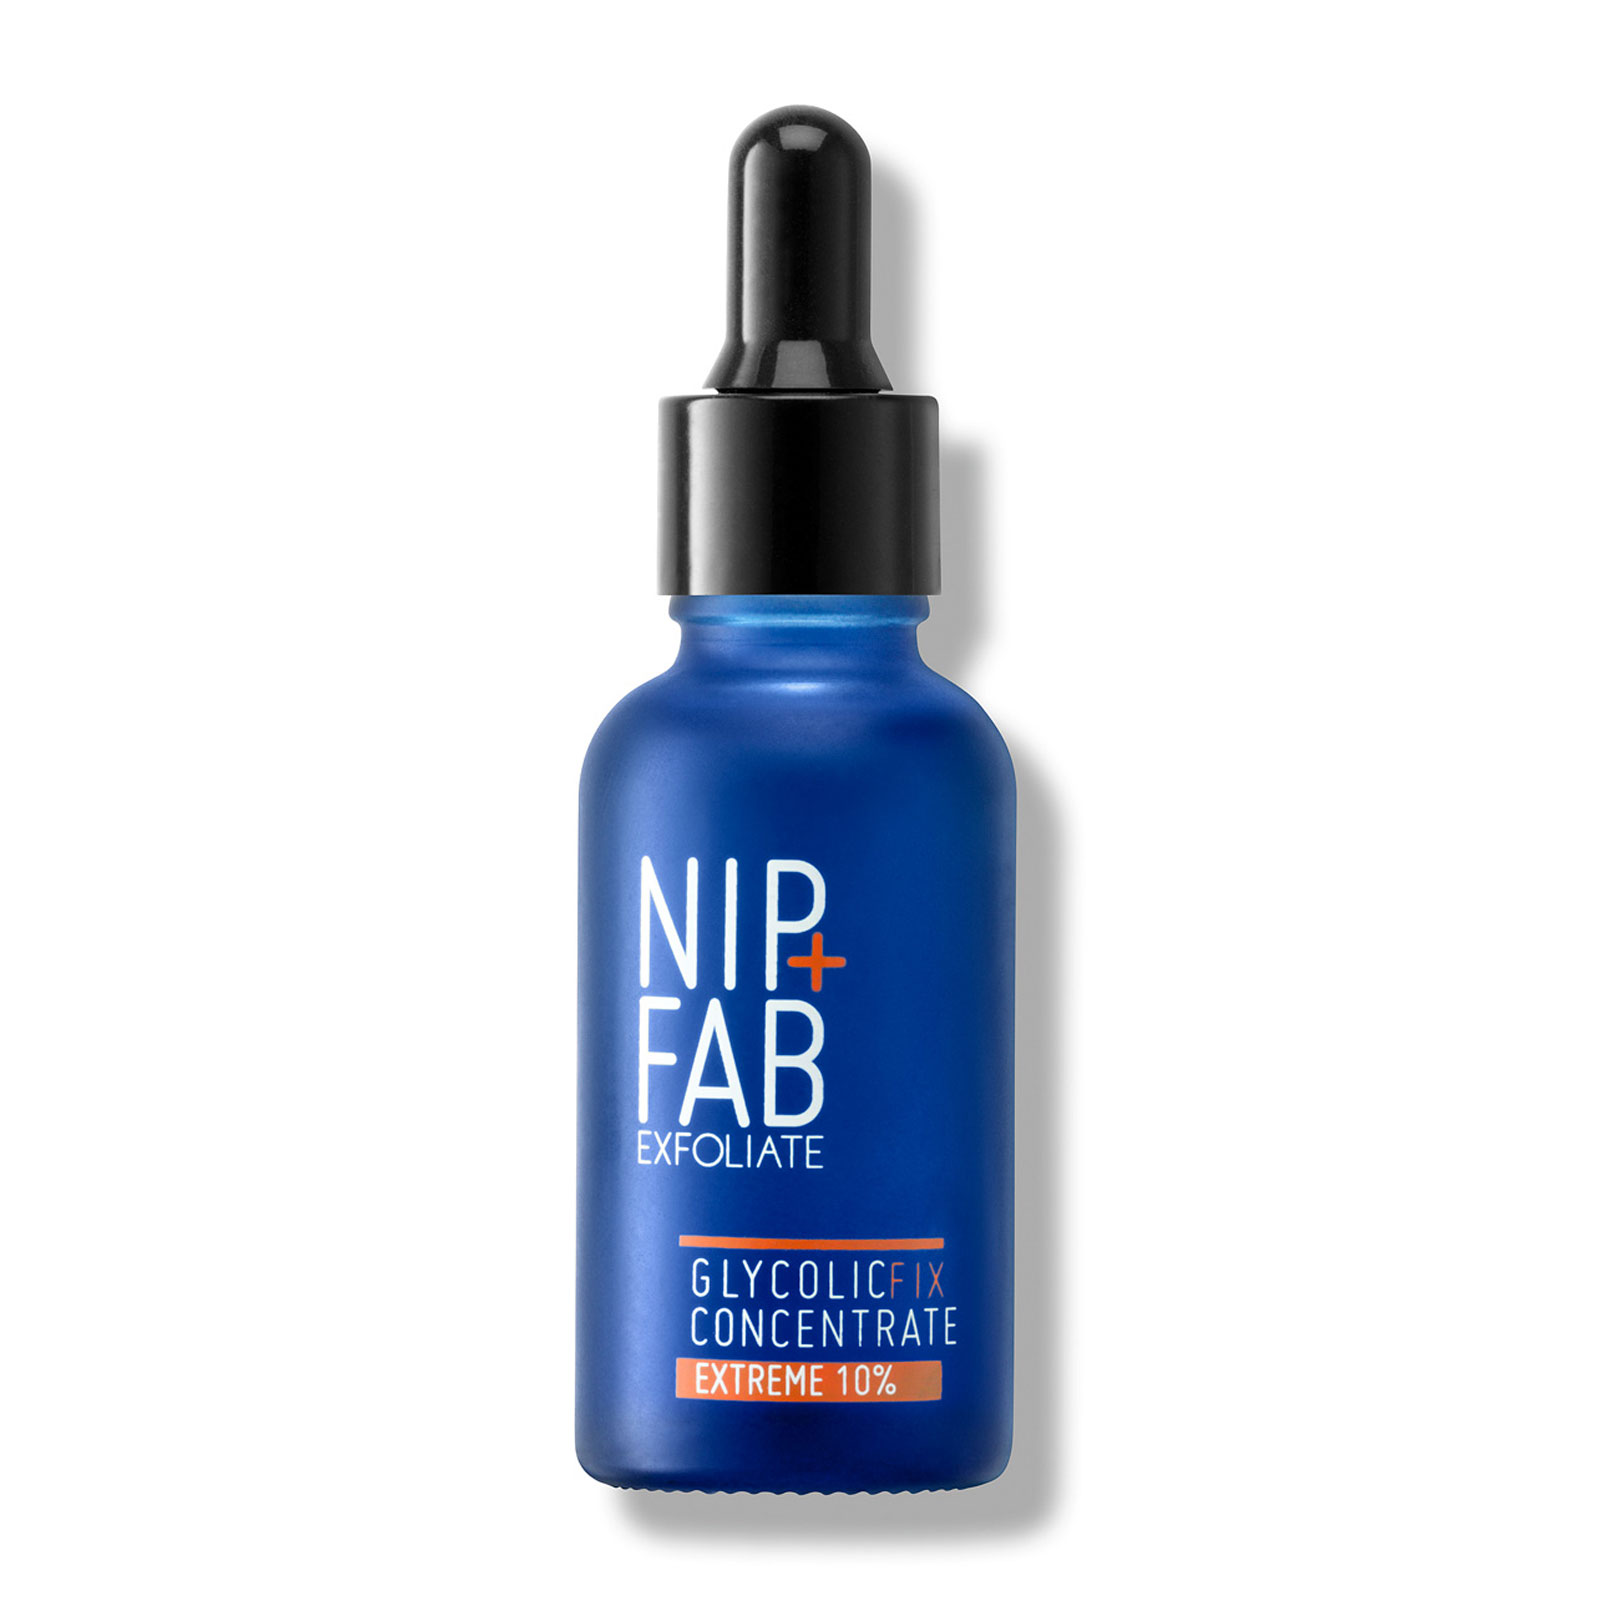 NIP+FAB 乙醇酸去角质霜 30ml